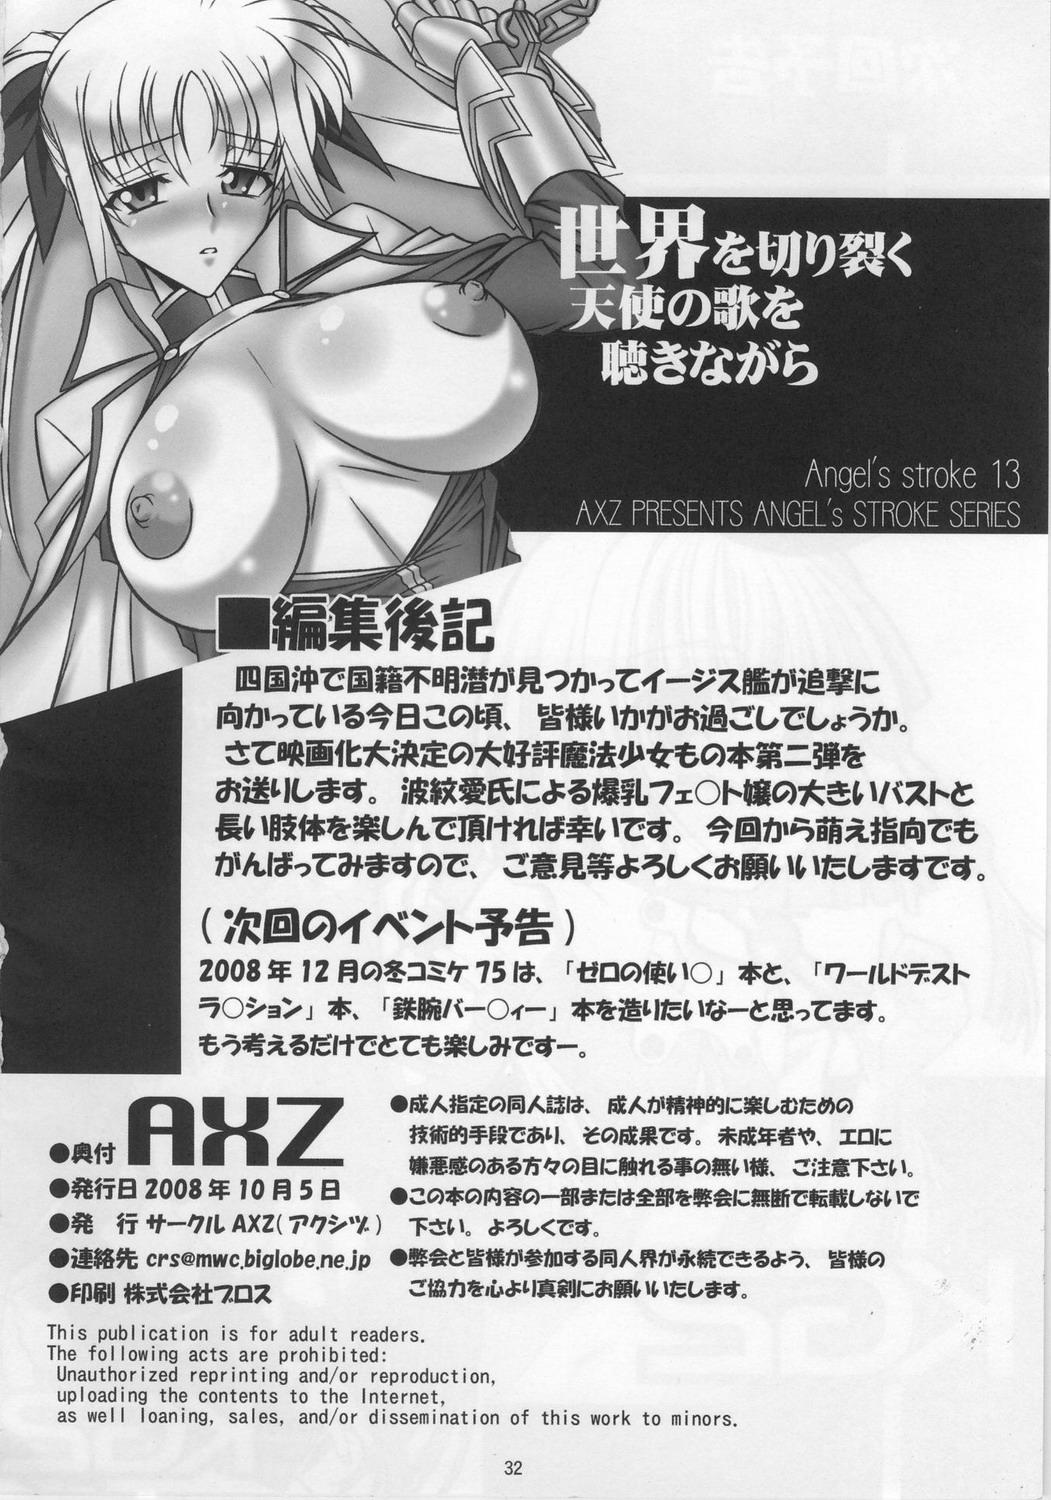 Cameltoe Angel's Stroke 13 Sekai o Kirisaku Tenshi no Uta o Kiki Nagara - Mahou shoujo lyrical nanoha | magical girl lyrical nanoha Insane Porn - Page 33